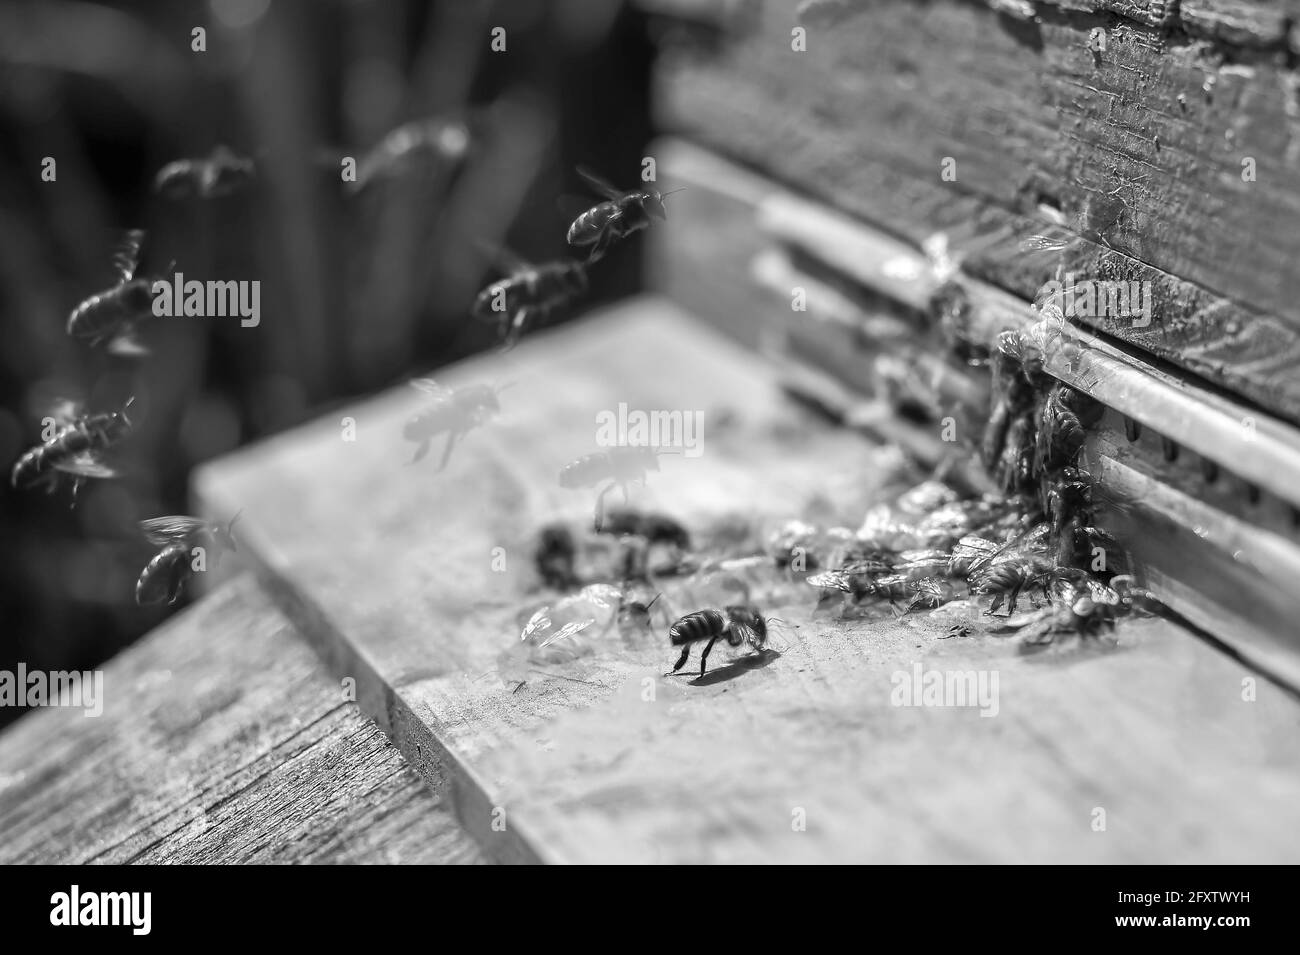 Les abeilles collectent le miel et essaient autour de la ruche. Le concept de travail et d'organisation bien coordonnés. Mise au point sélective. Photo en noir et blanc. Banque D'Images